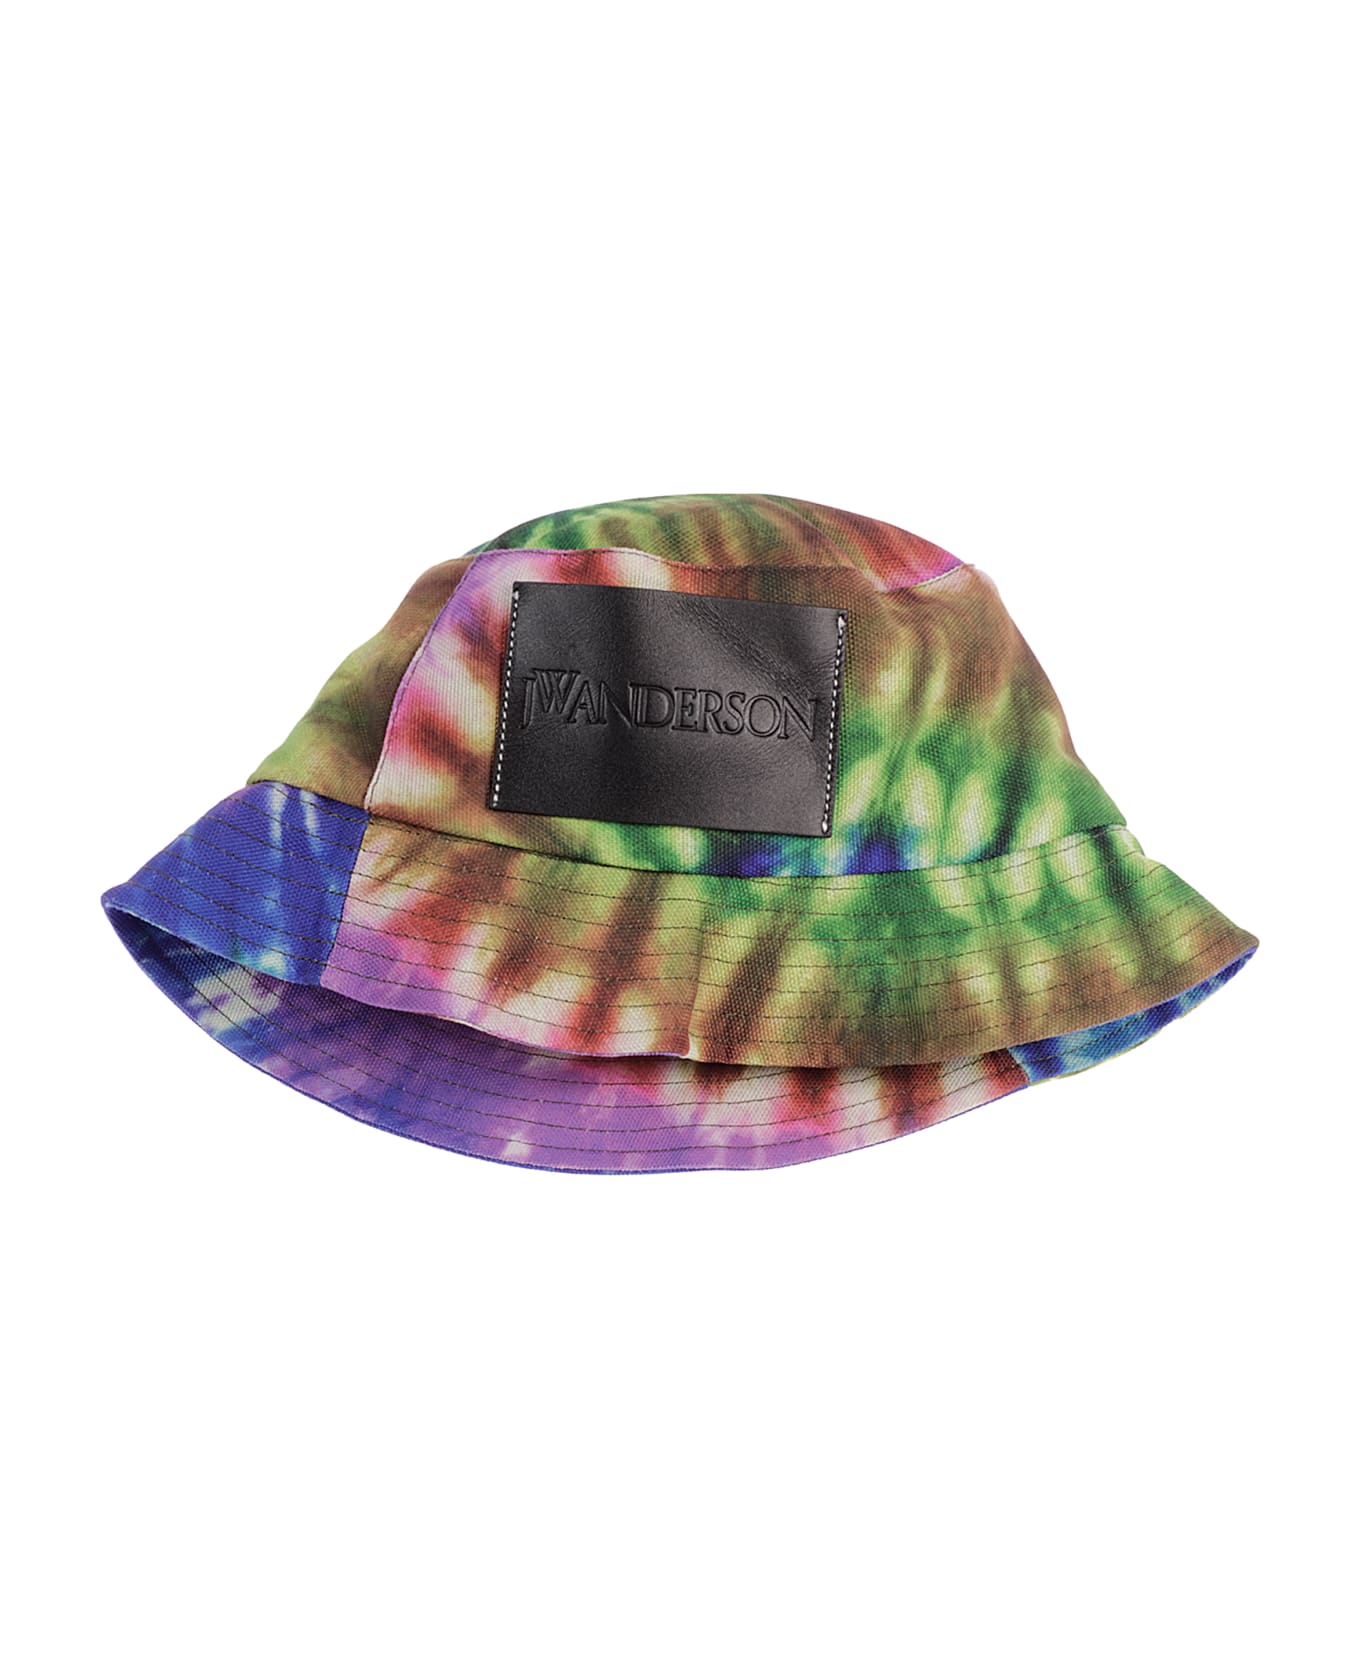 J.W. Anderson Bucket Hat - Multicolor 帽子